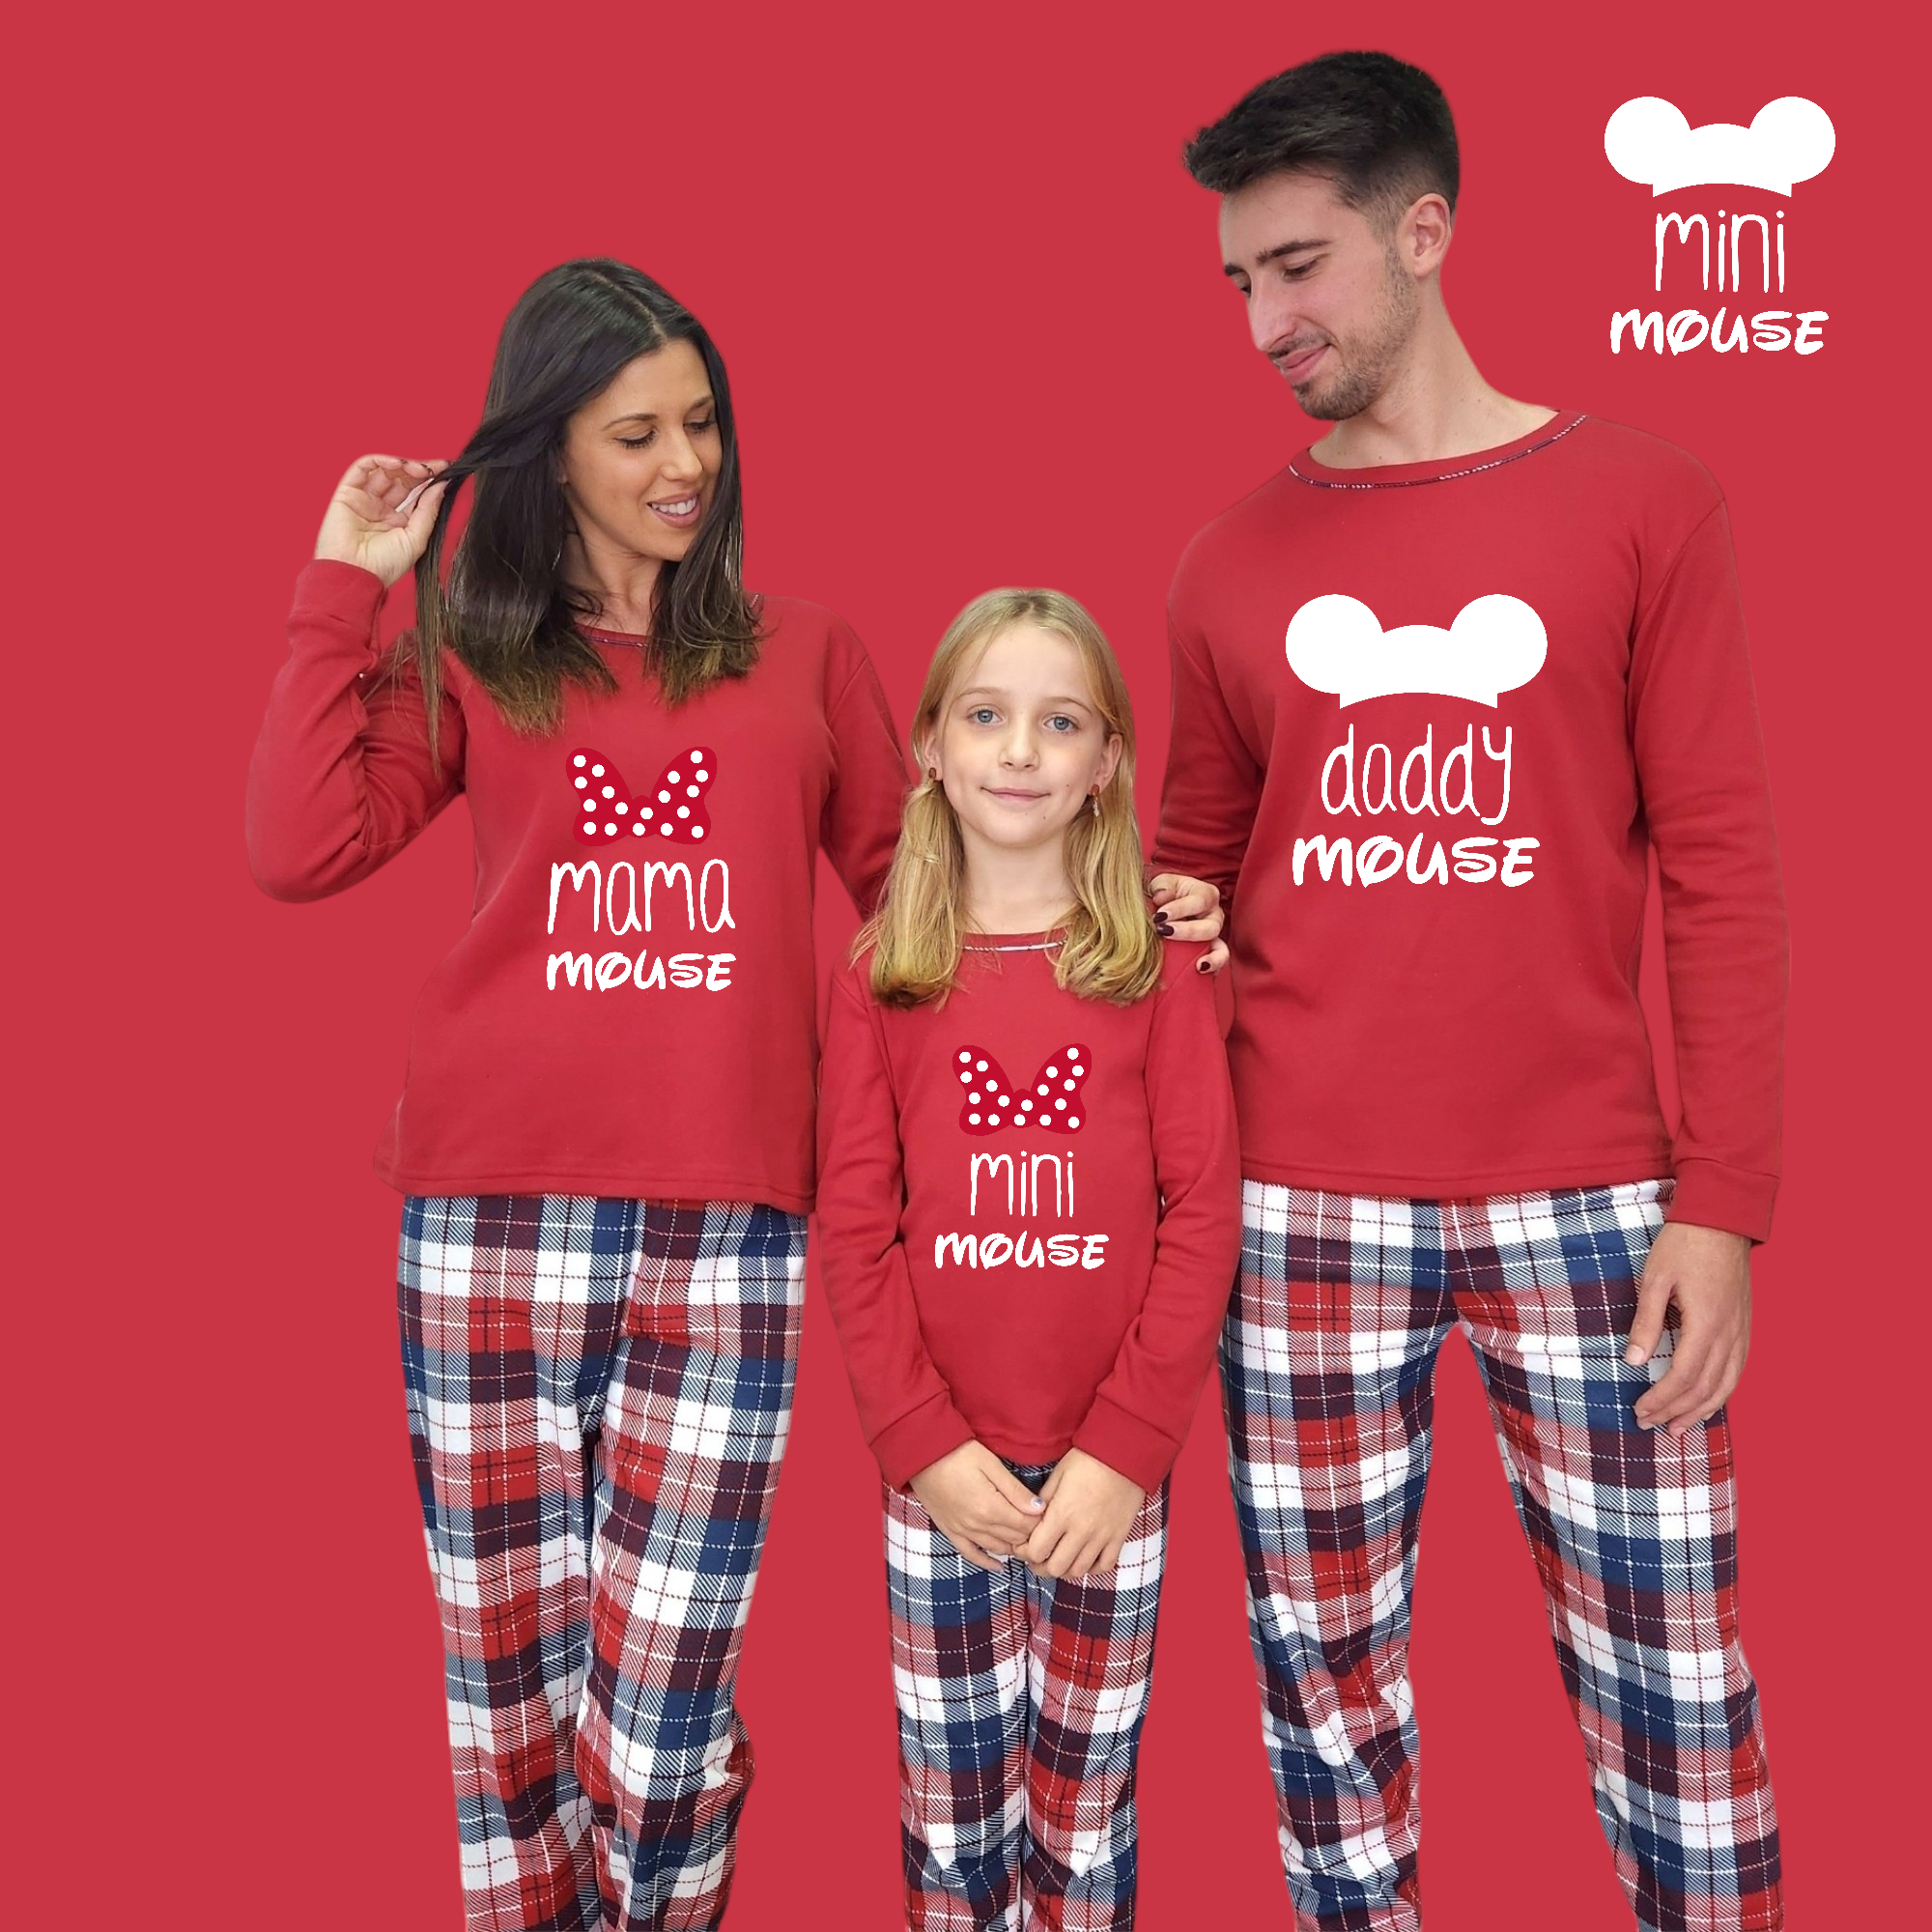 Pijama familia camiseta roja Mama-daddy mouse mini mouse